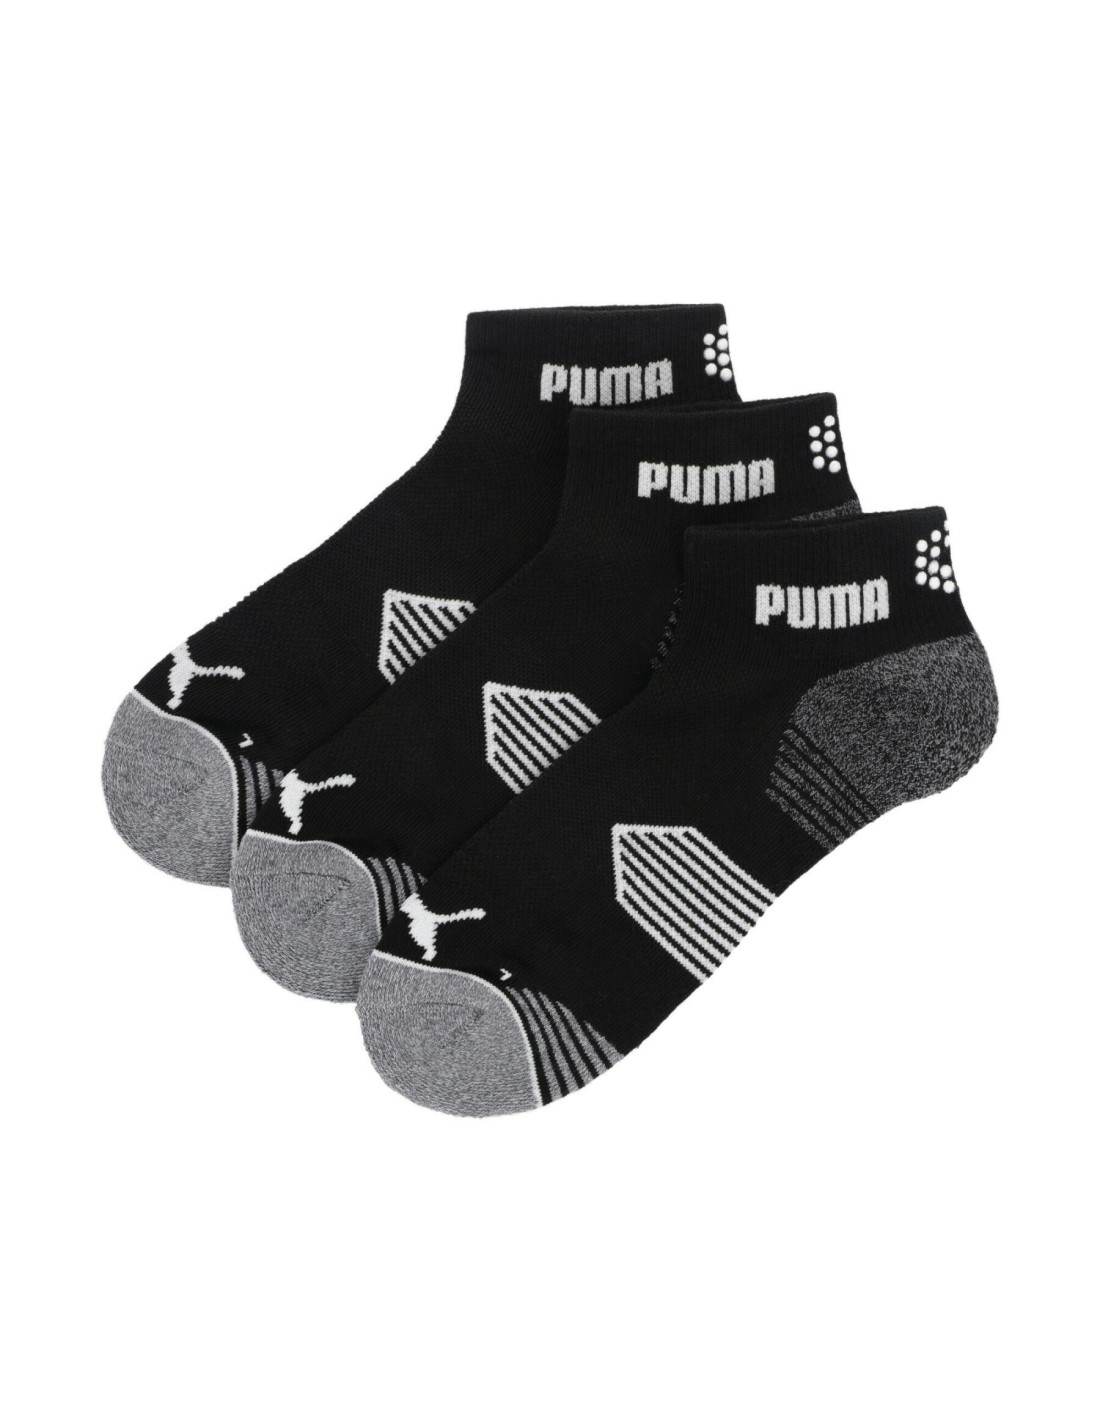 Chaussettes Puma ESS 1/4 cut - Noir